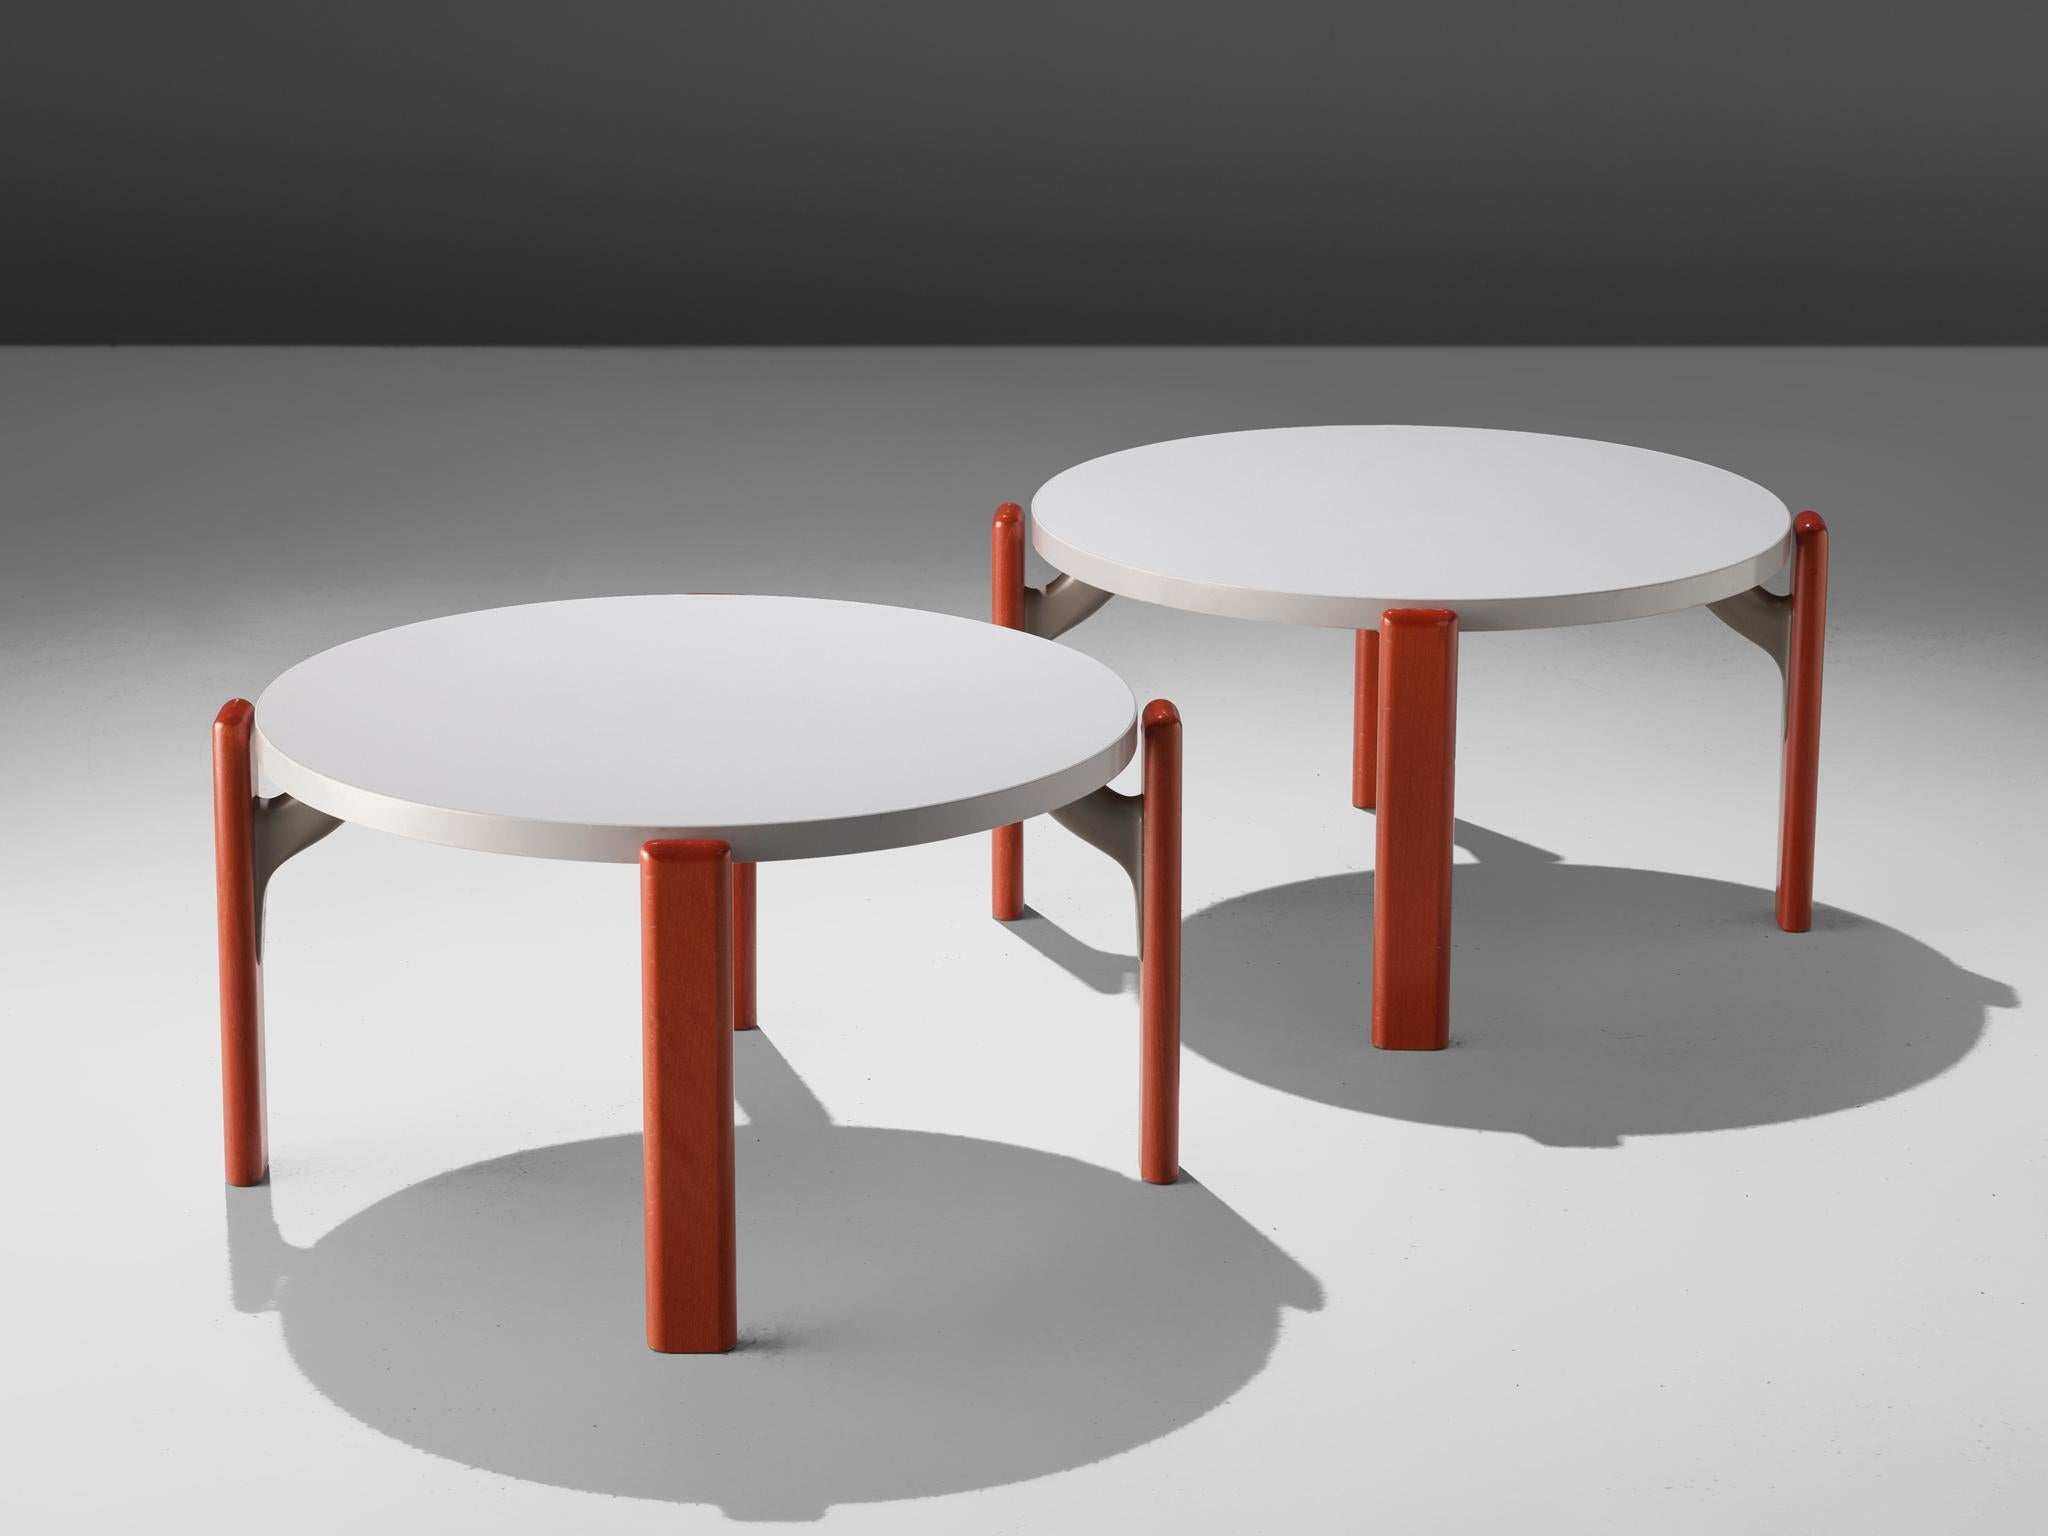 Bruno Rey pour Dietiker Switzerland, paire de tables basses en contreplaqué, Suisse, années 1970

Ces tables basses sont dotées de quatre pieds en bois laqué rouge et d'un plateau rond blanc. Un raccord gris maintient les pieds et le plateau